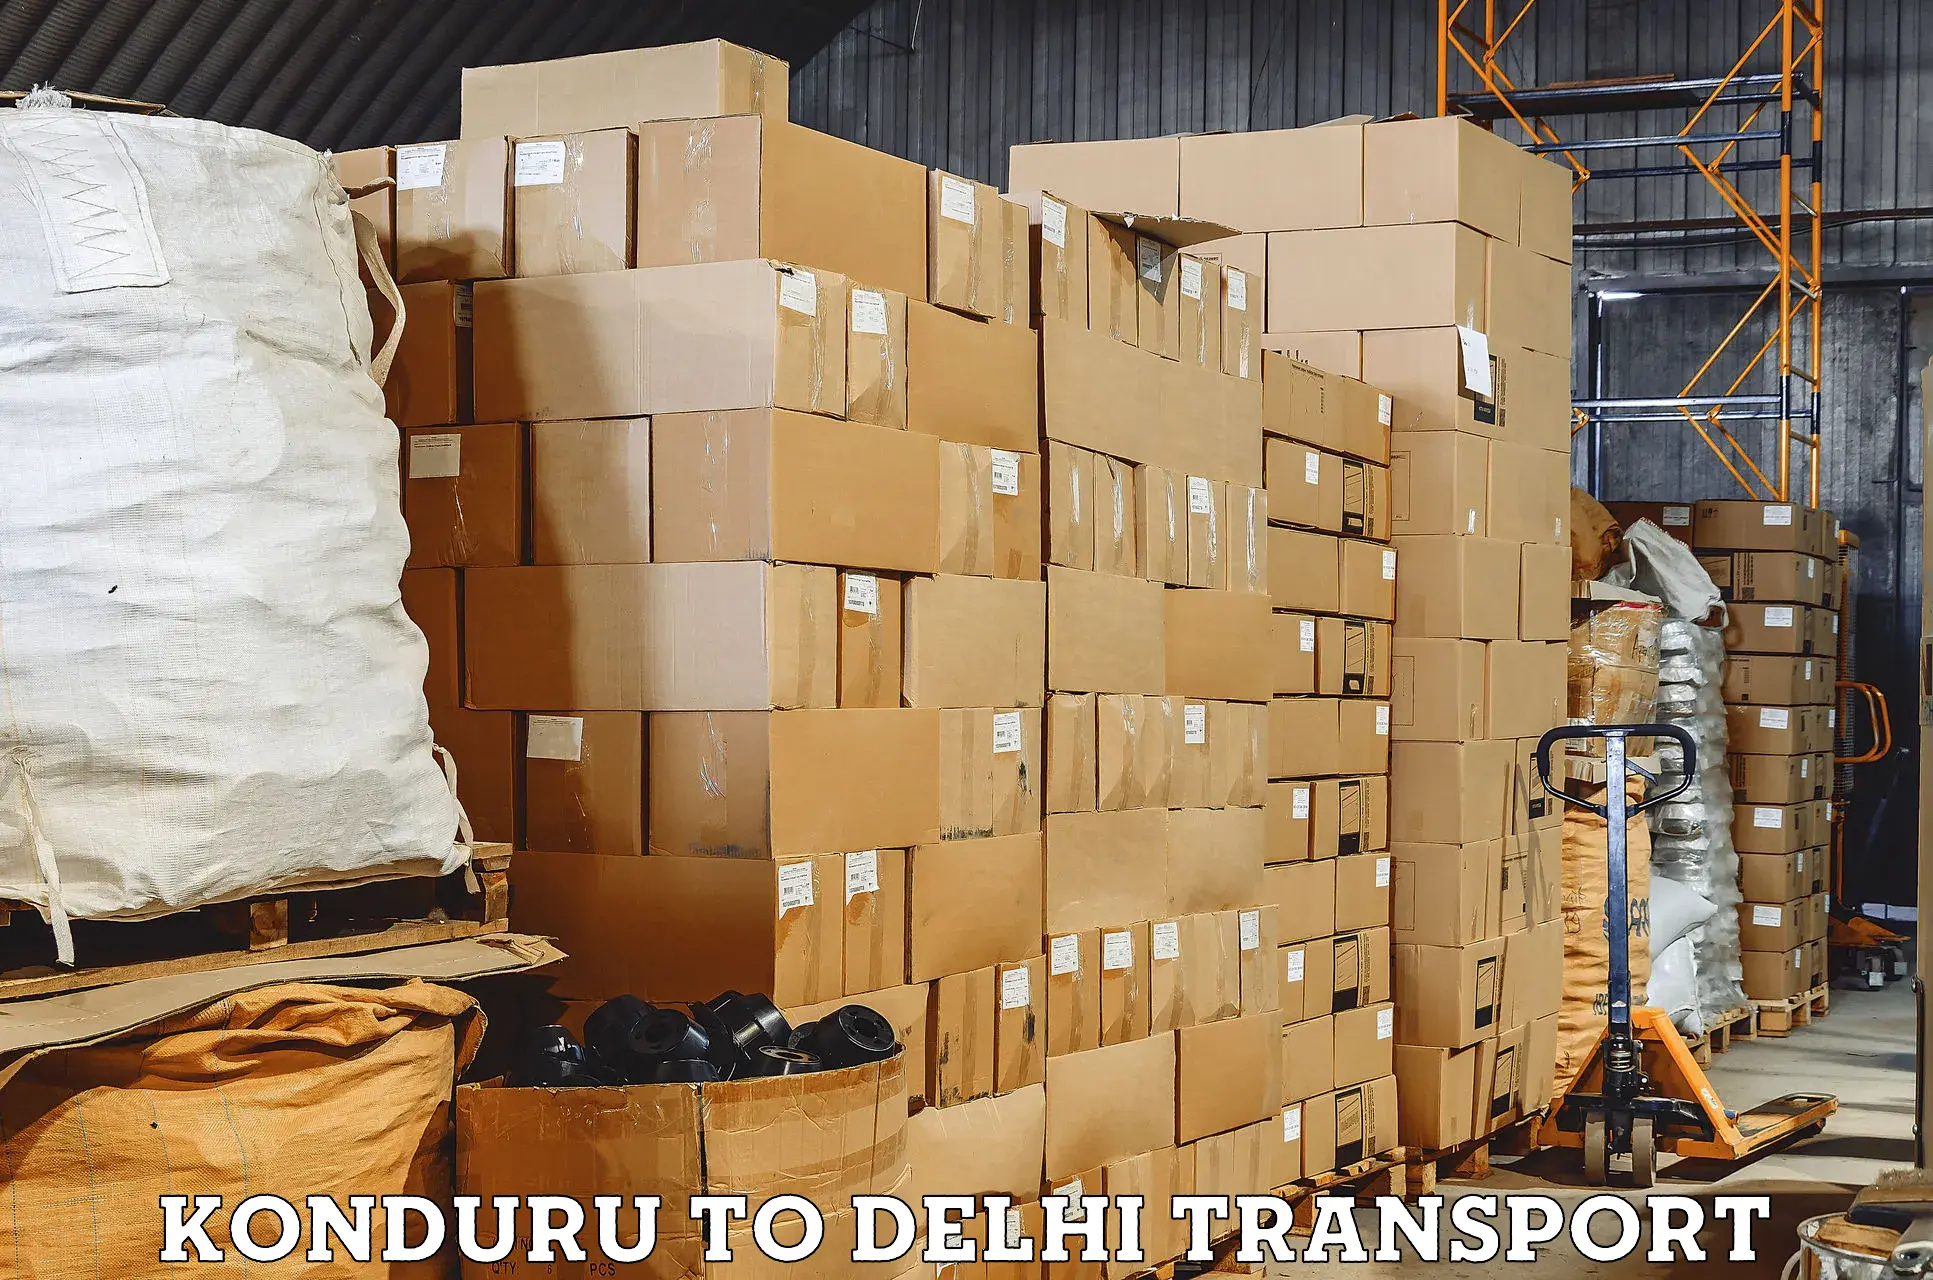 Truck transport companies in India Konduru to NIT Delhi